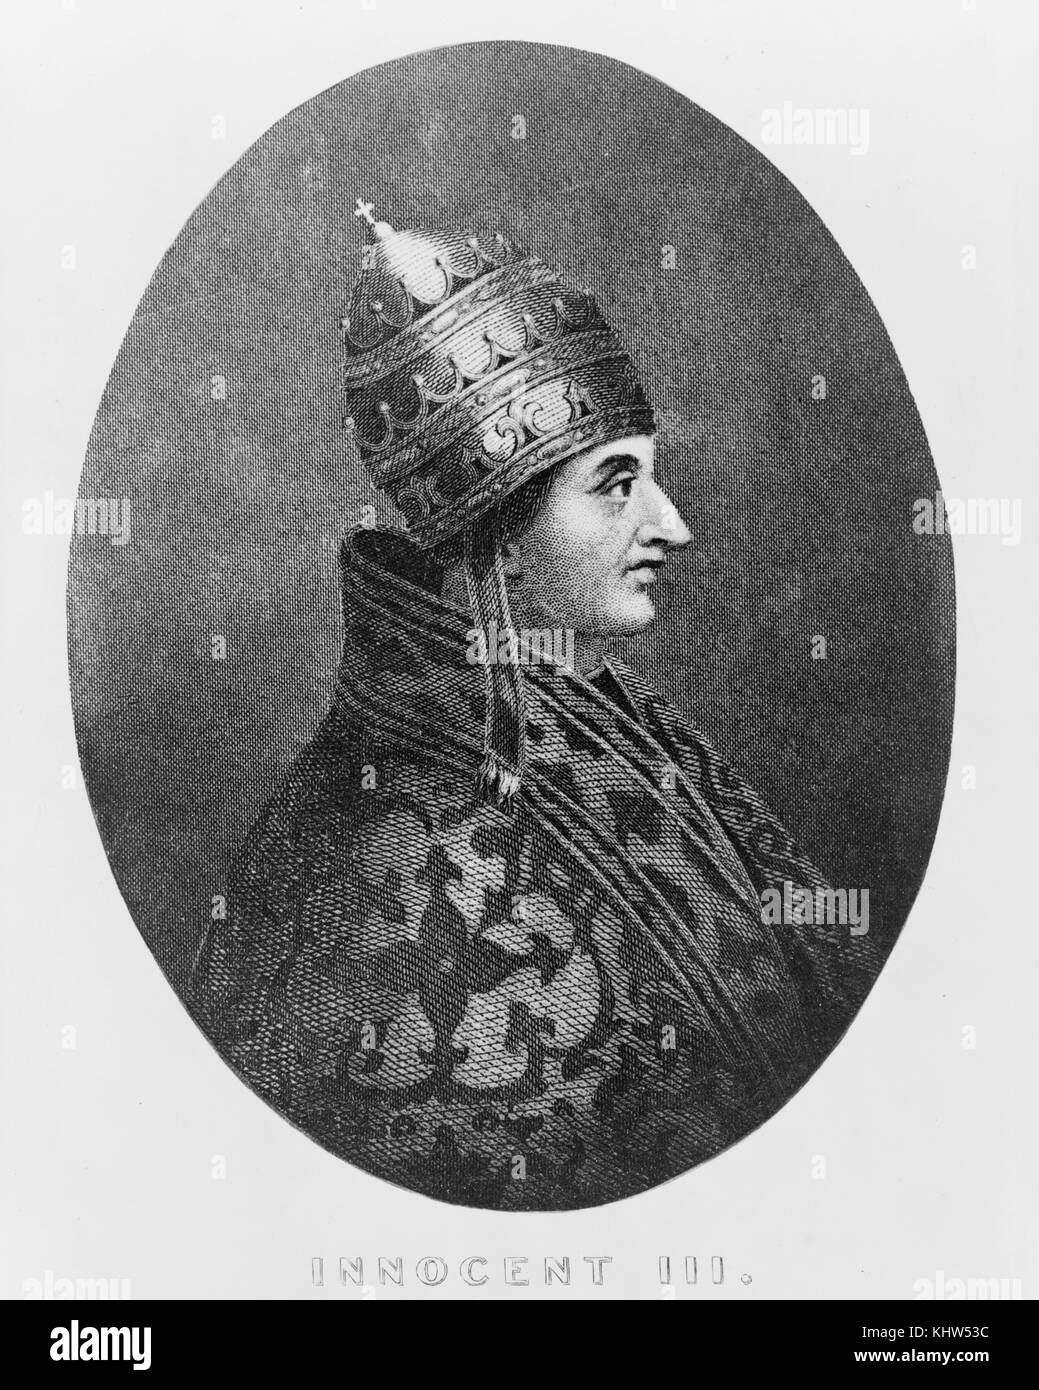 Ritratto di papa Innocenzo III (1161-1216) nato Lotario dei Conti di Segni, talvolta anglicizzato a Lothar di segni. In data xx secolo Foto Stock